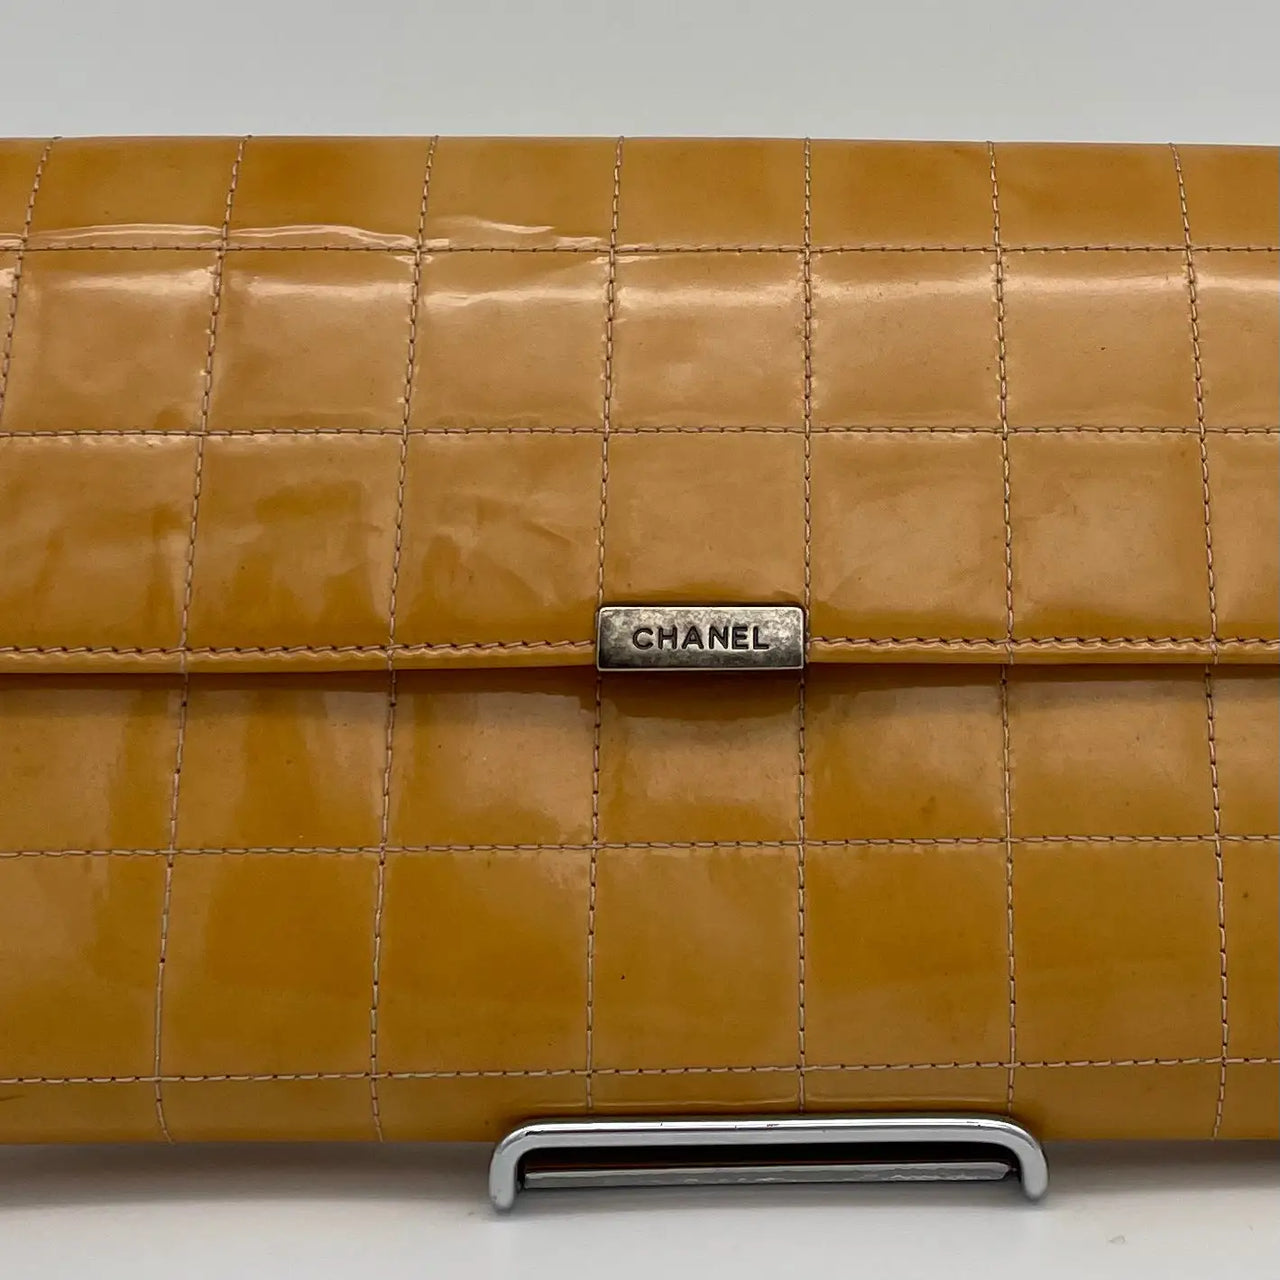 Chanel Black Patent Leather Vintage Chocolate Bar Kisslock Shoulder Bag  Chanel